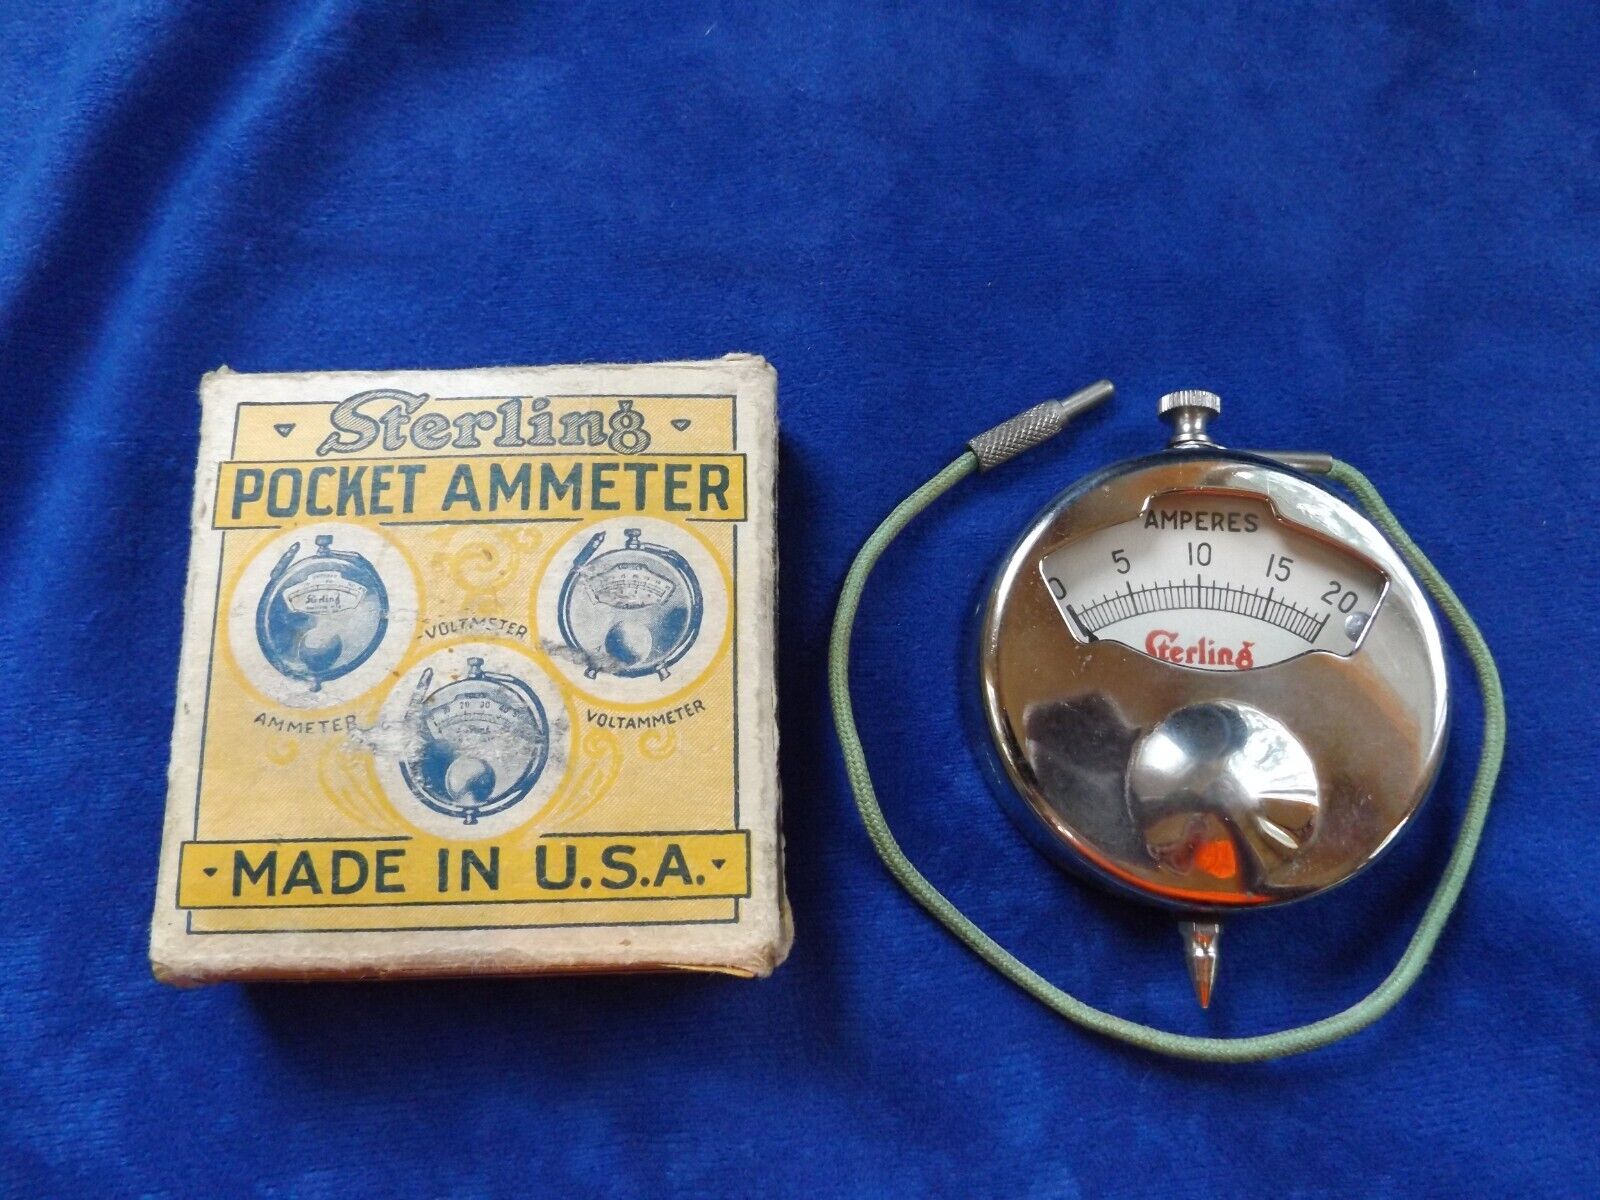 Vintage Sterling Ammeter No. 23 flash battery tester in Original Box.